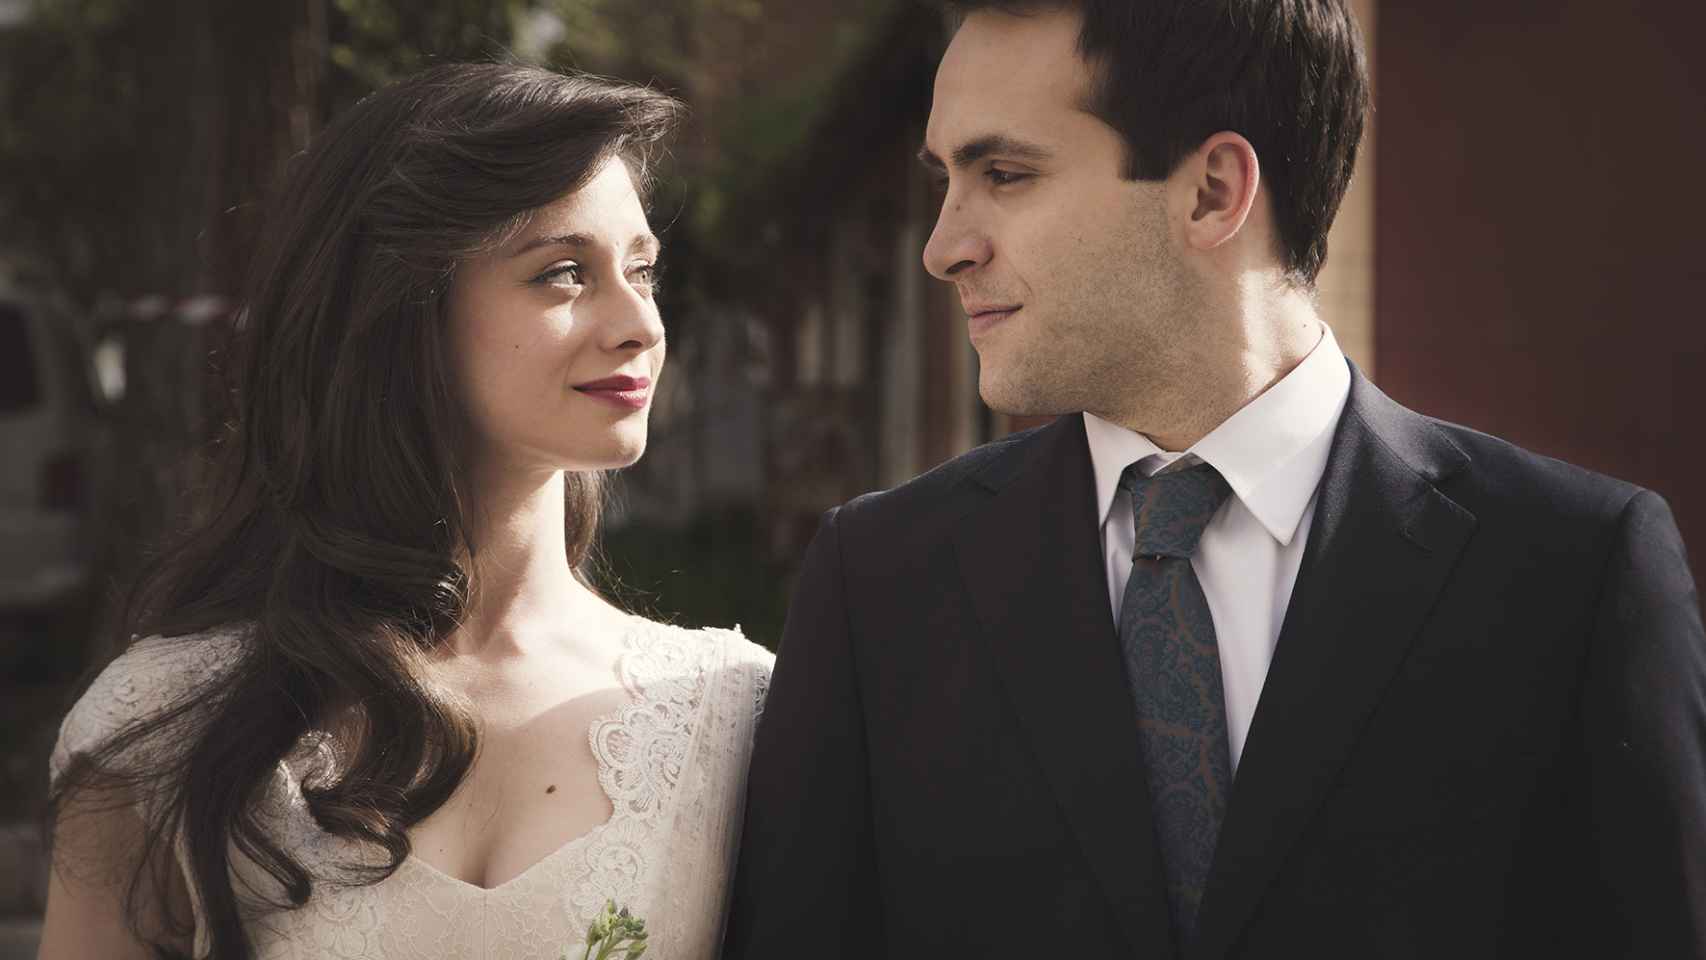 La boda de Carlos y Karina: 'Cuéntame' cierra un círculo perfecto